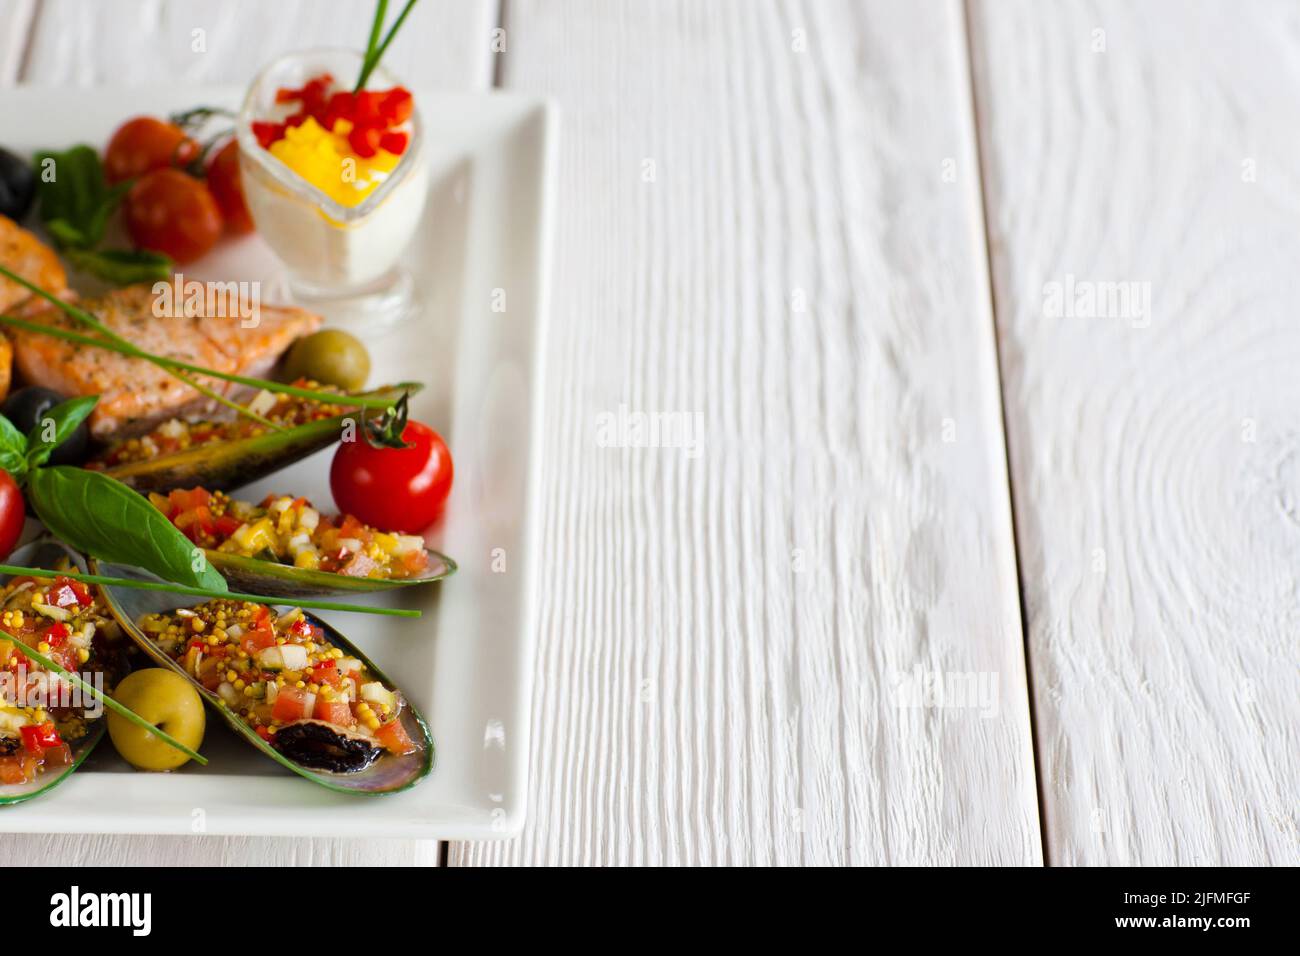 Cucina turca - cozze ripiene e salmone vuoto Foto Stock